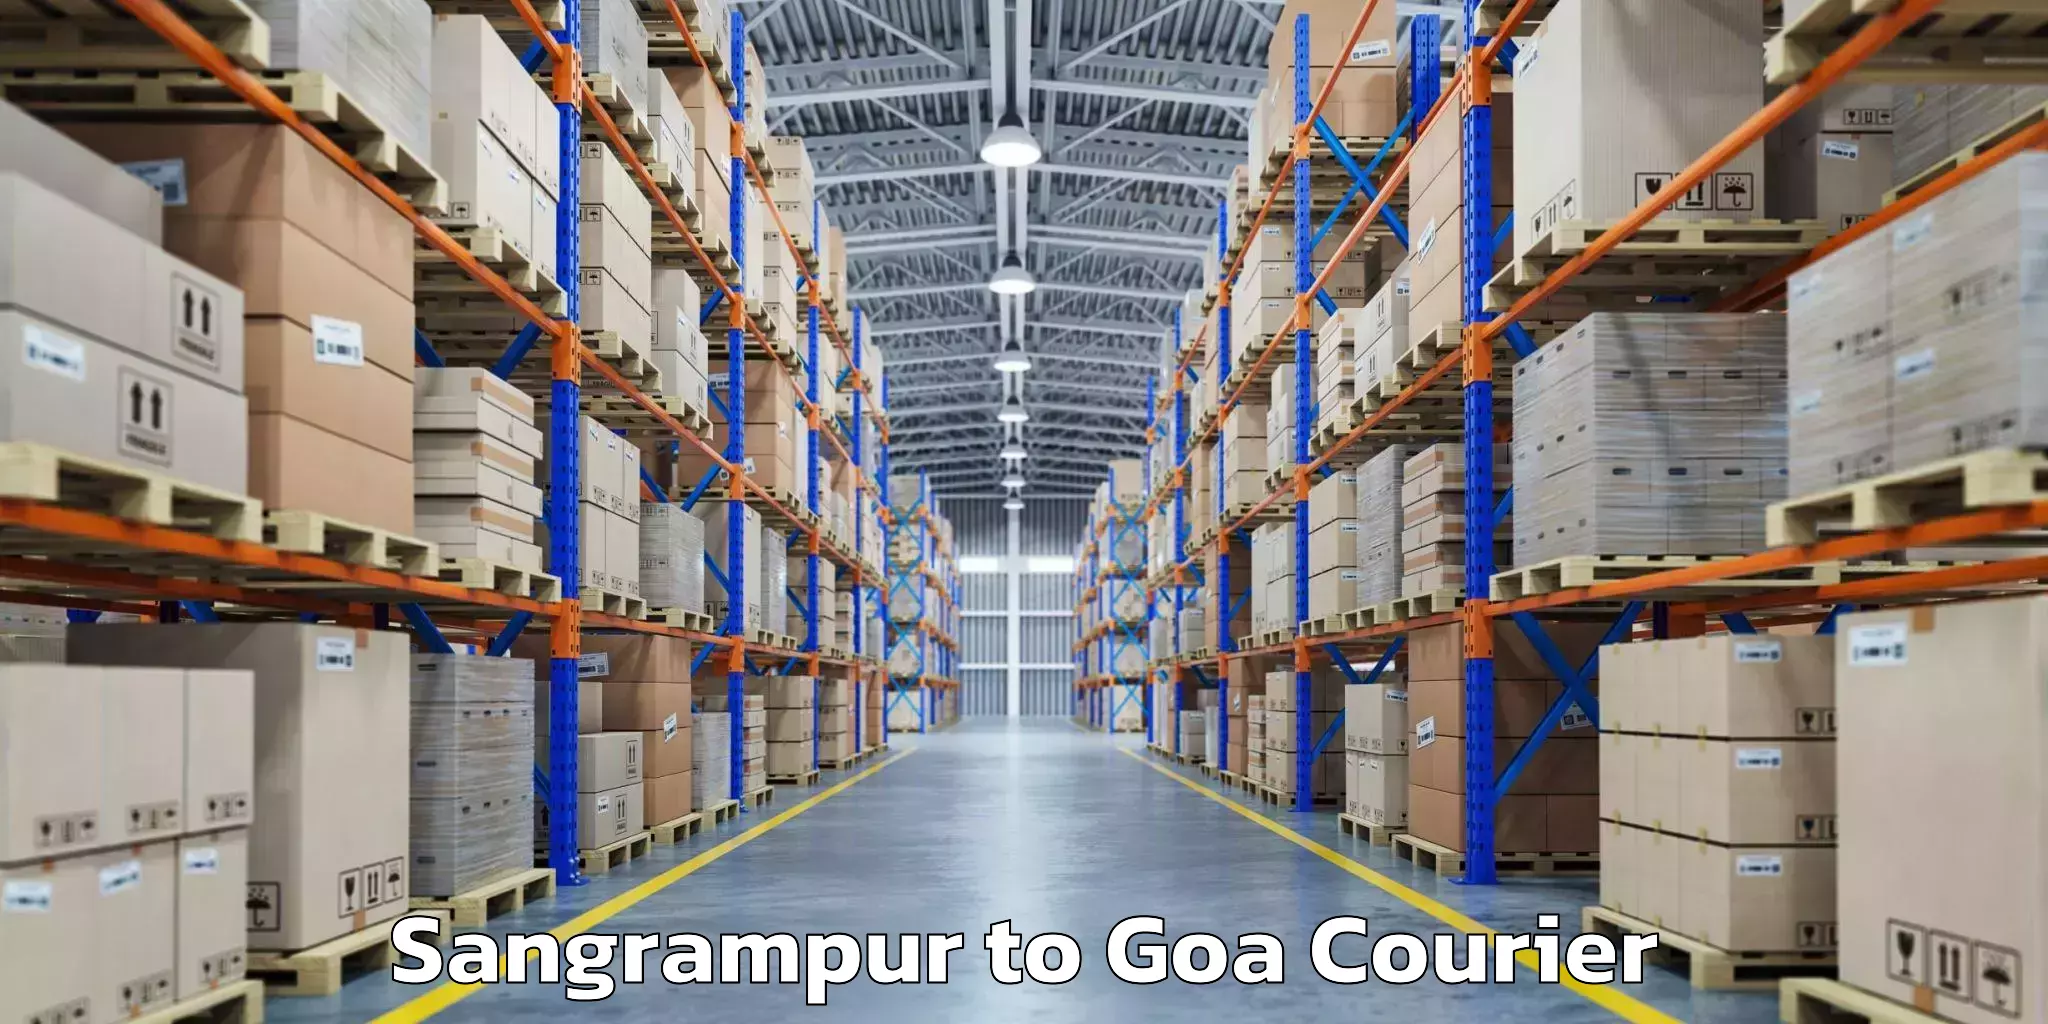 Baggage transport logistics Sangrampur to Goa University